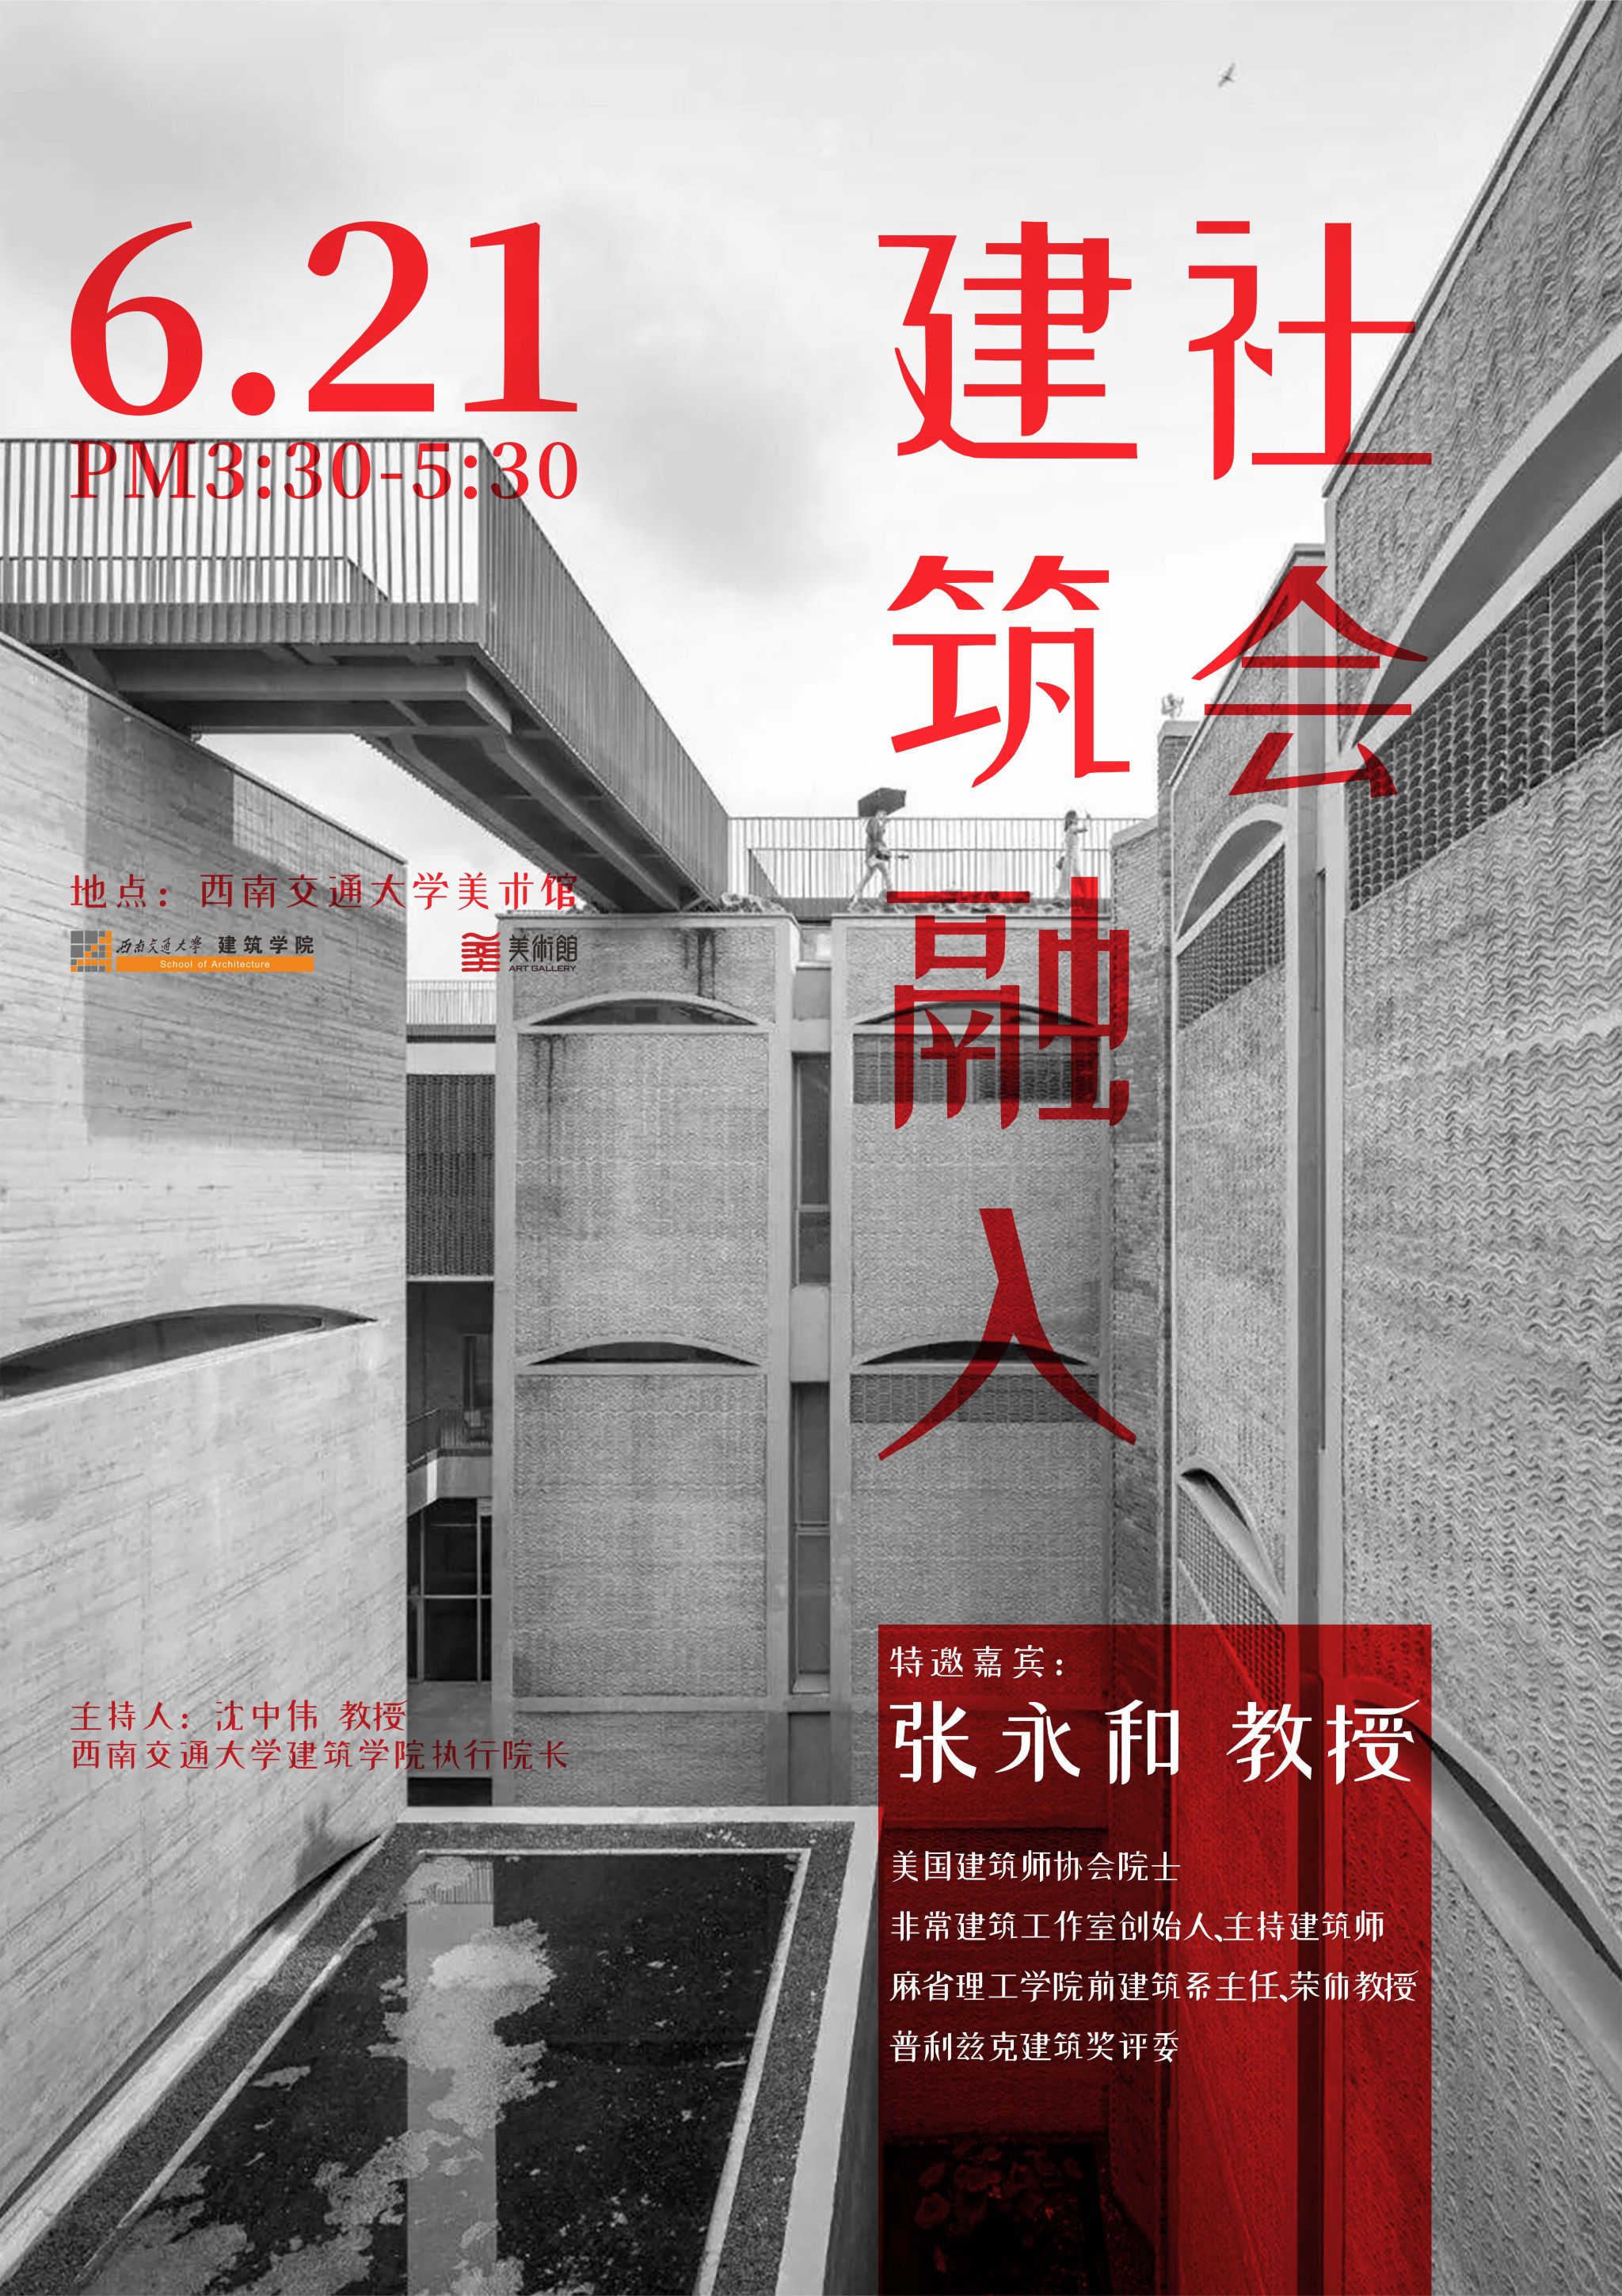 张永和:建筑融入社会